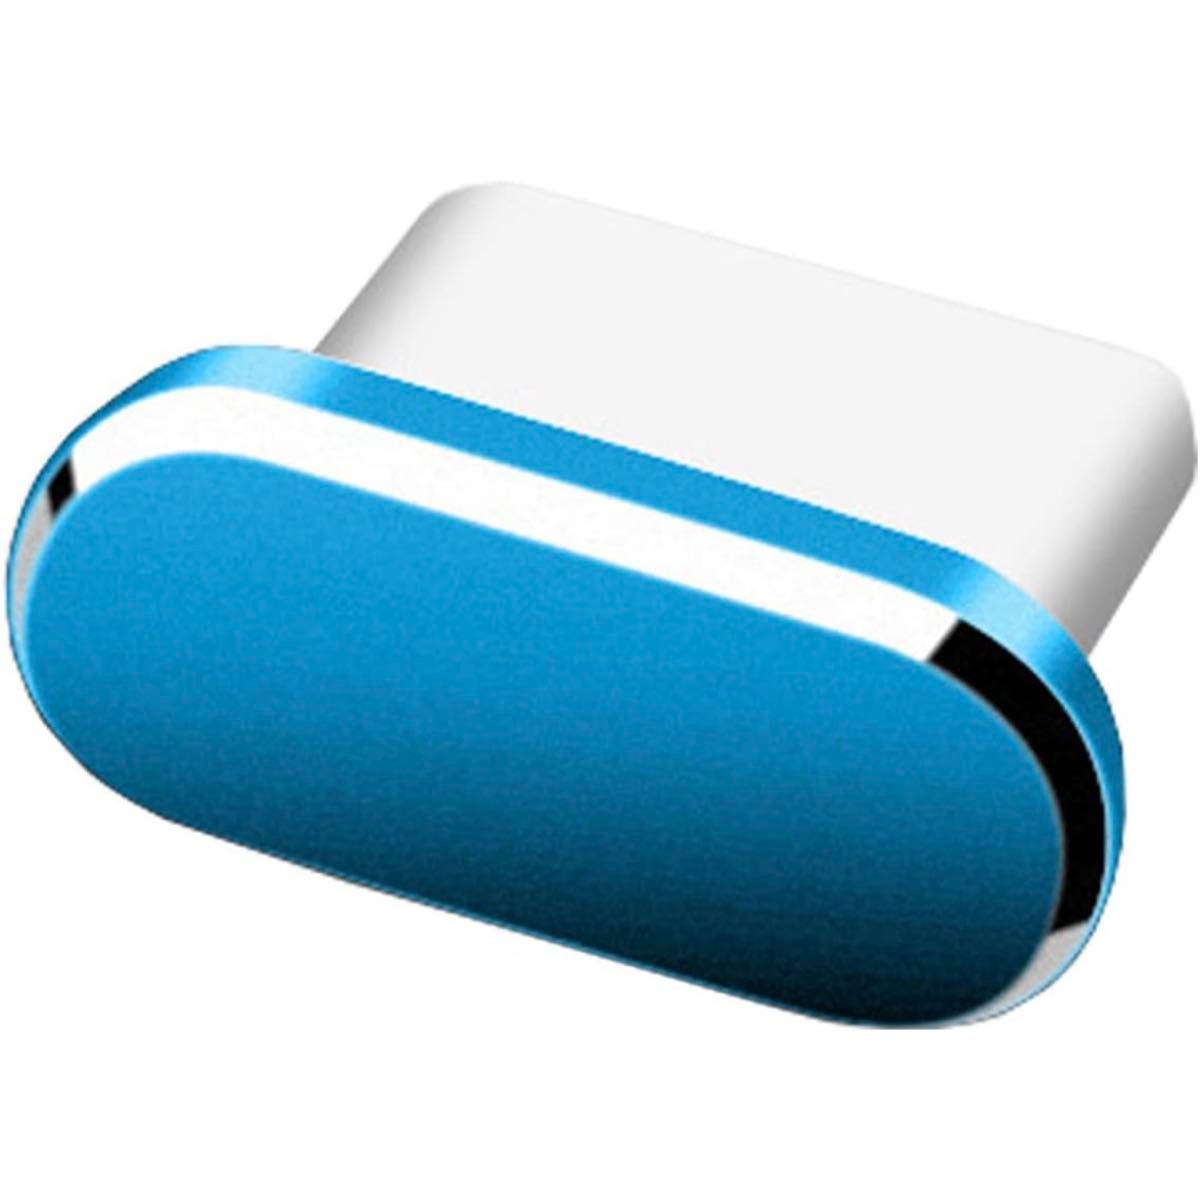 iPhone15シリーズ USB-C コネクタカバー ブルー  保護キャップ 防塵 コネクタキャップ ダストプラグ ダストカバー